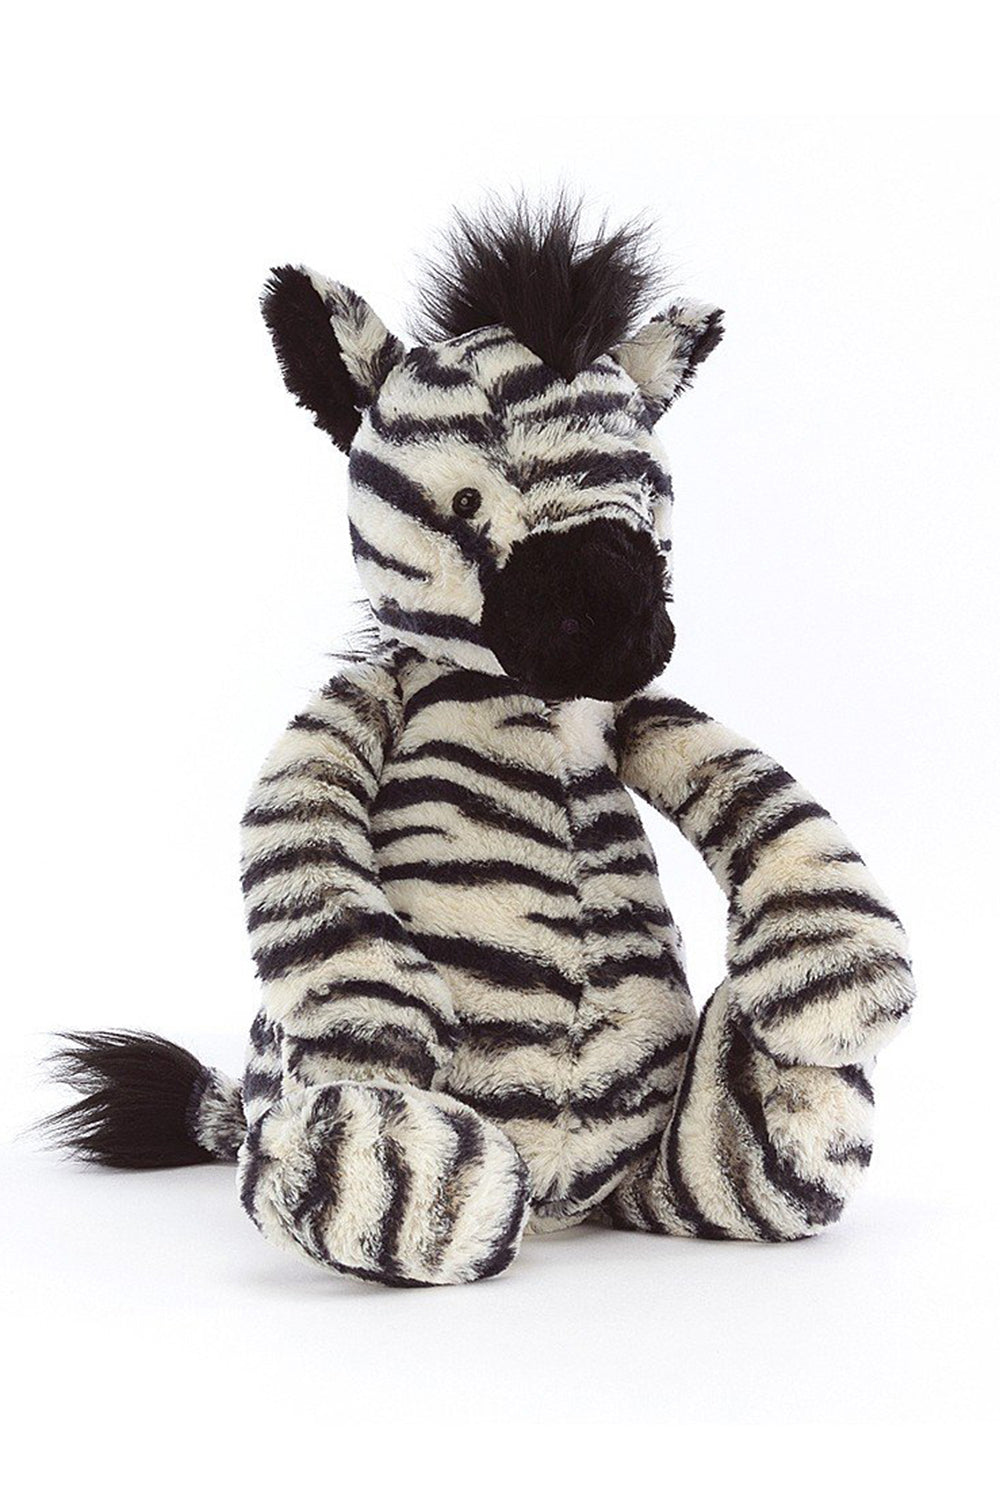 JELLYCAT Bashful Zebra